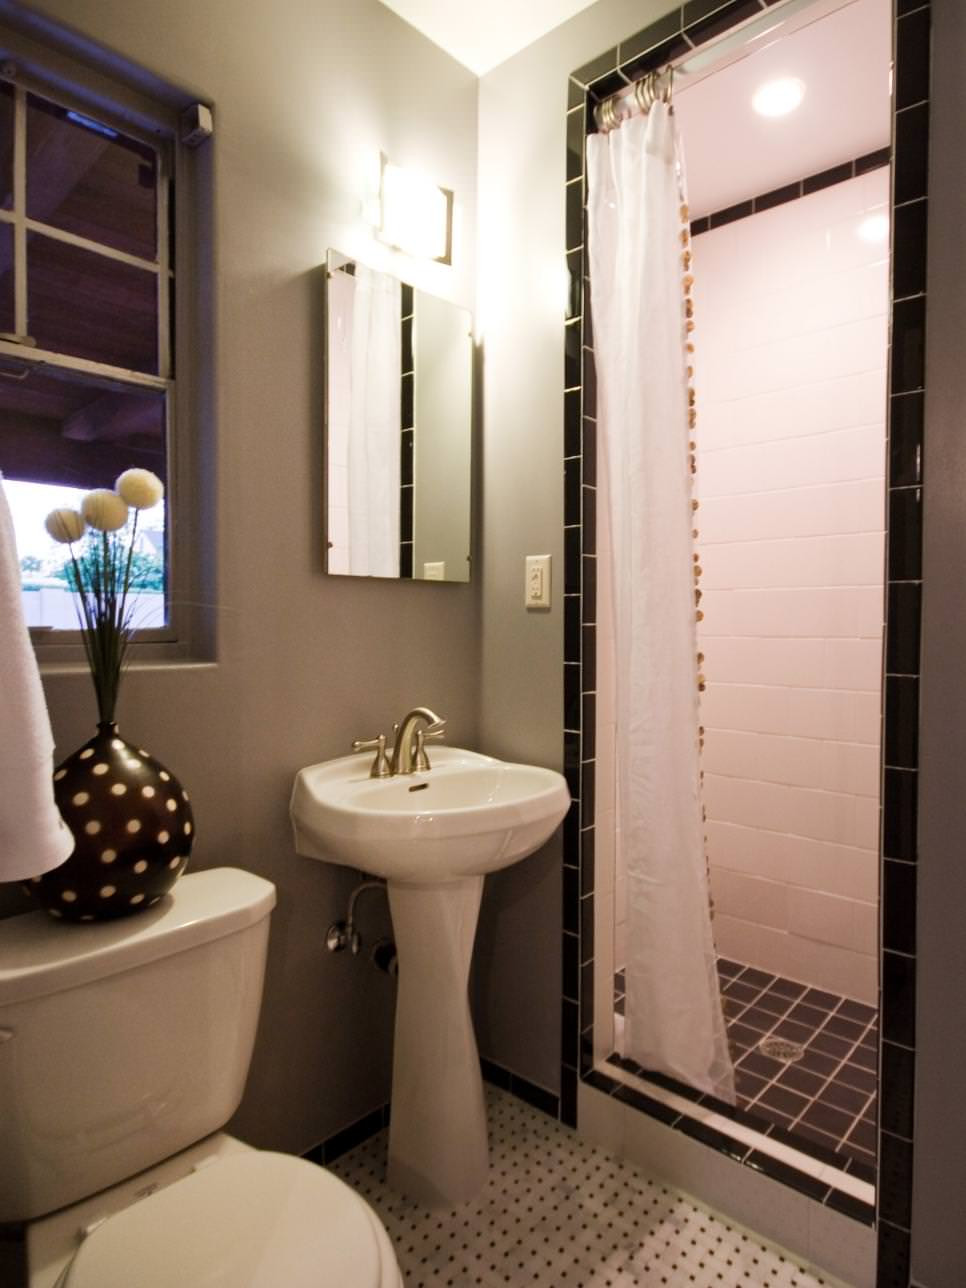 Small Bathroom Designs With Tub
 24 Bathroom Pedestal Sinks Ideas Designs